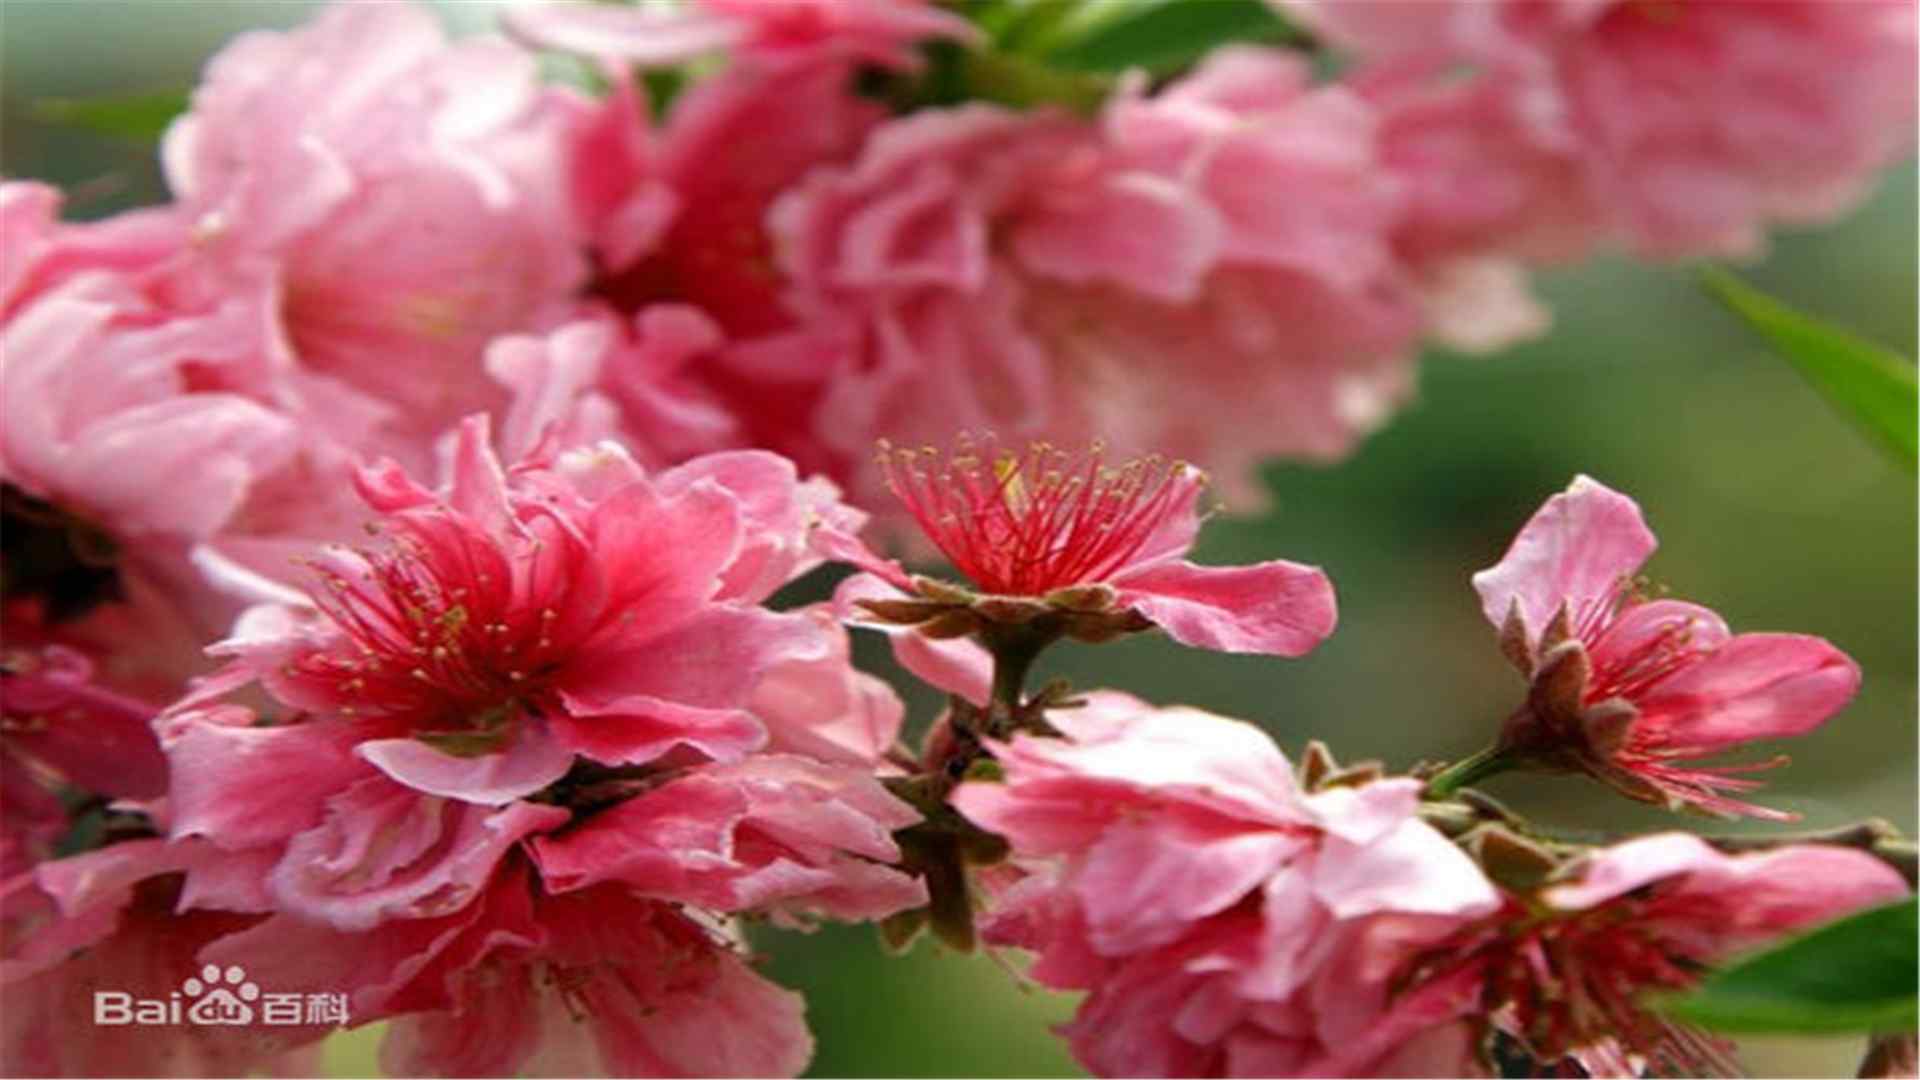 桃花品种千瓣红桃桌面壁纸